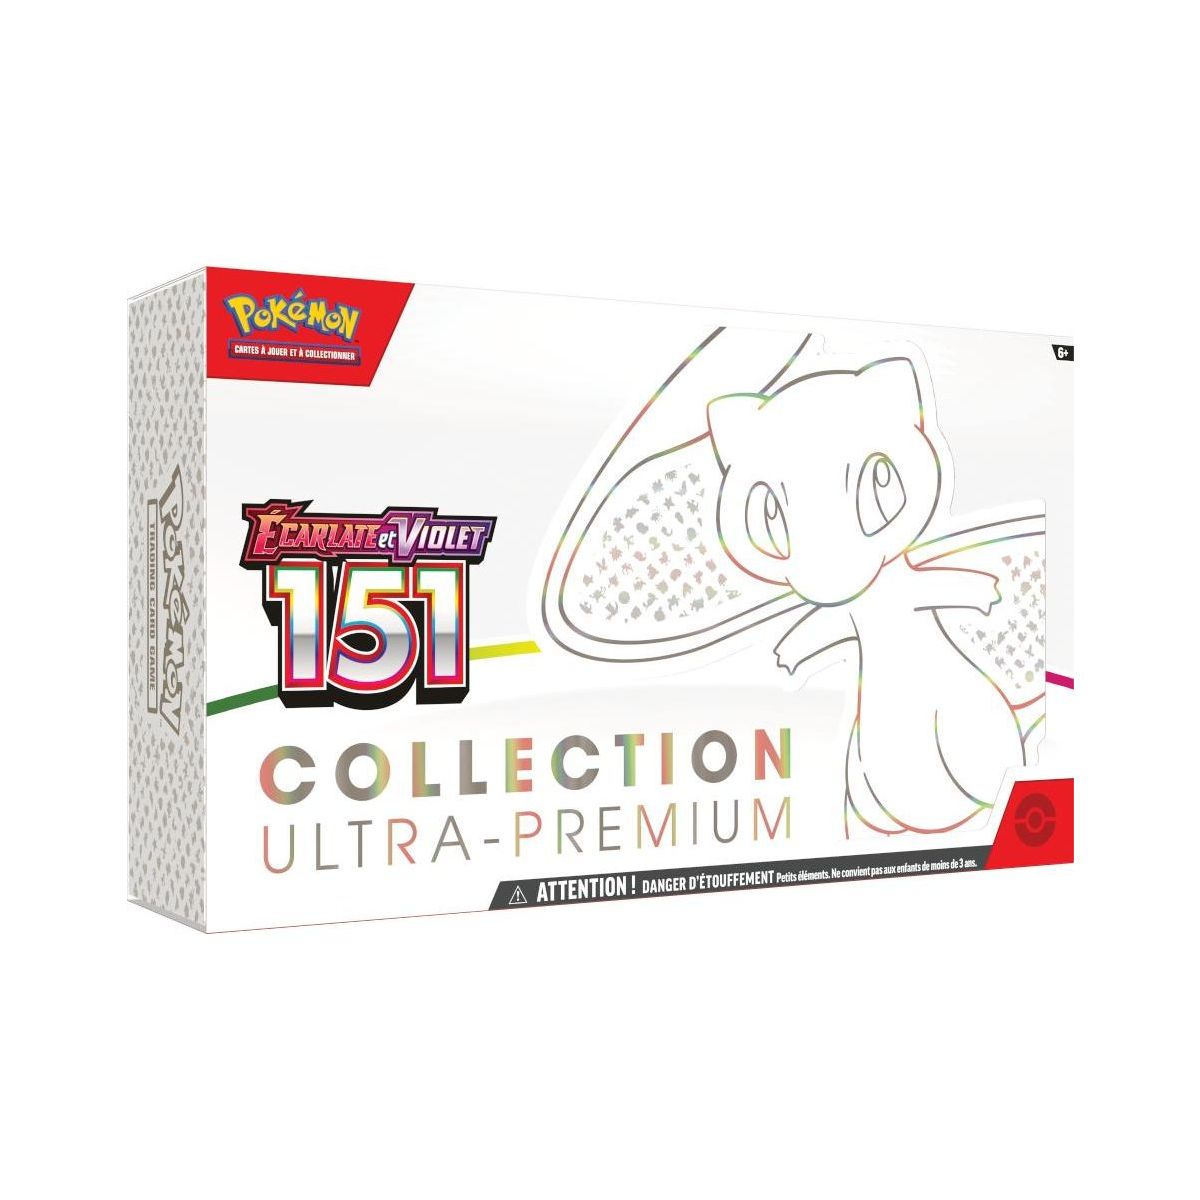 Item Pokémon - Coffret Collection Ultra Premium - Ecarlate et Violet - 151 -[SV03.5 - EV03.5] - FR